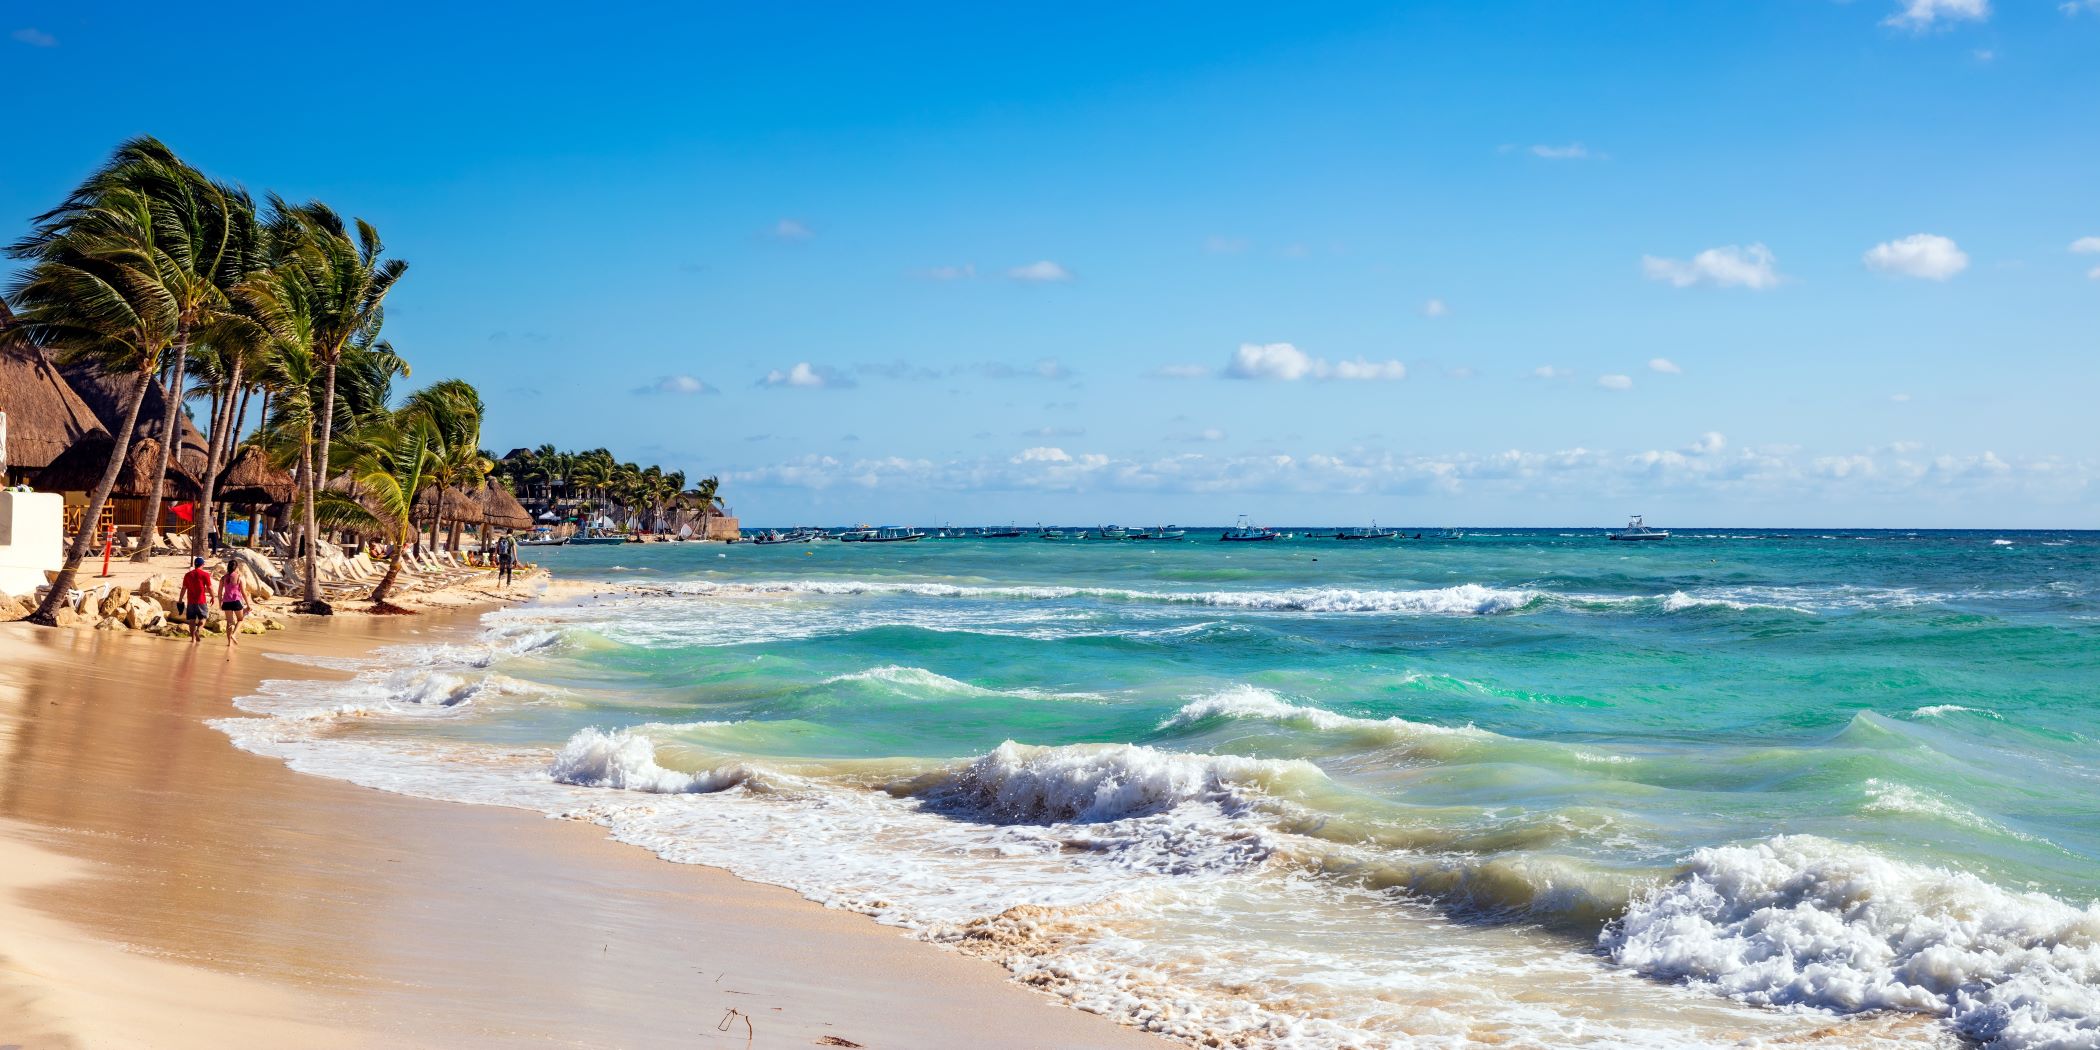 Playa del Carmen, México. Hay olas y mar color turquesa, arena, palmeras y personas.